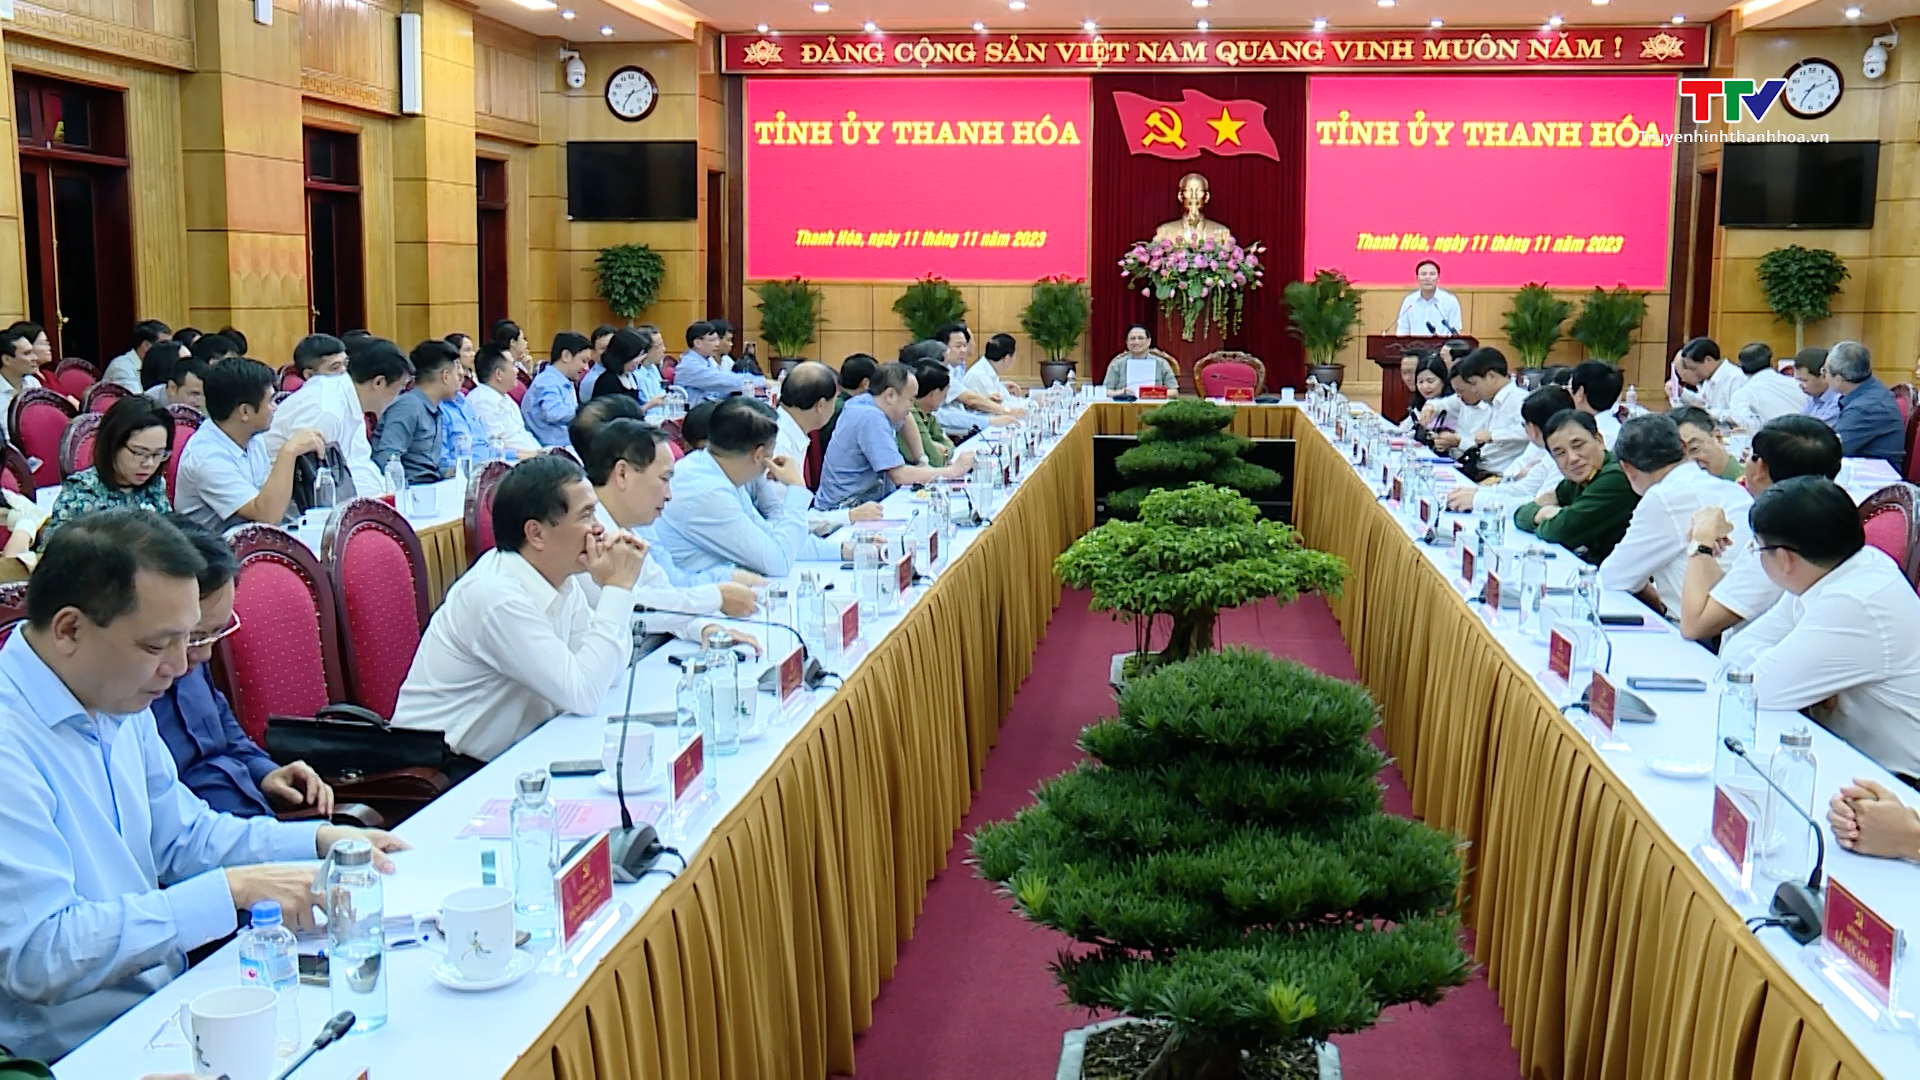 Thủ tướng Chính phủ Phạm Minh Chính làm việc với tỉnh Thanh Hóa về tình hình kinh tế - xã hội, quốc phòng - an ninh, công tác xây dựng Đảng và hệ thống chính trị - Ảnh 10.